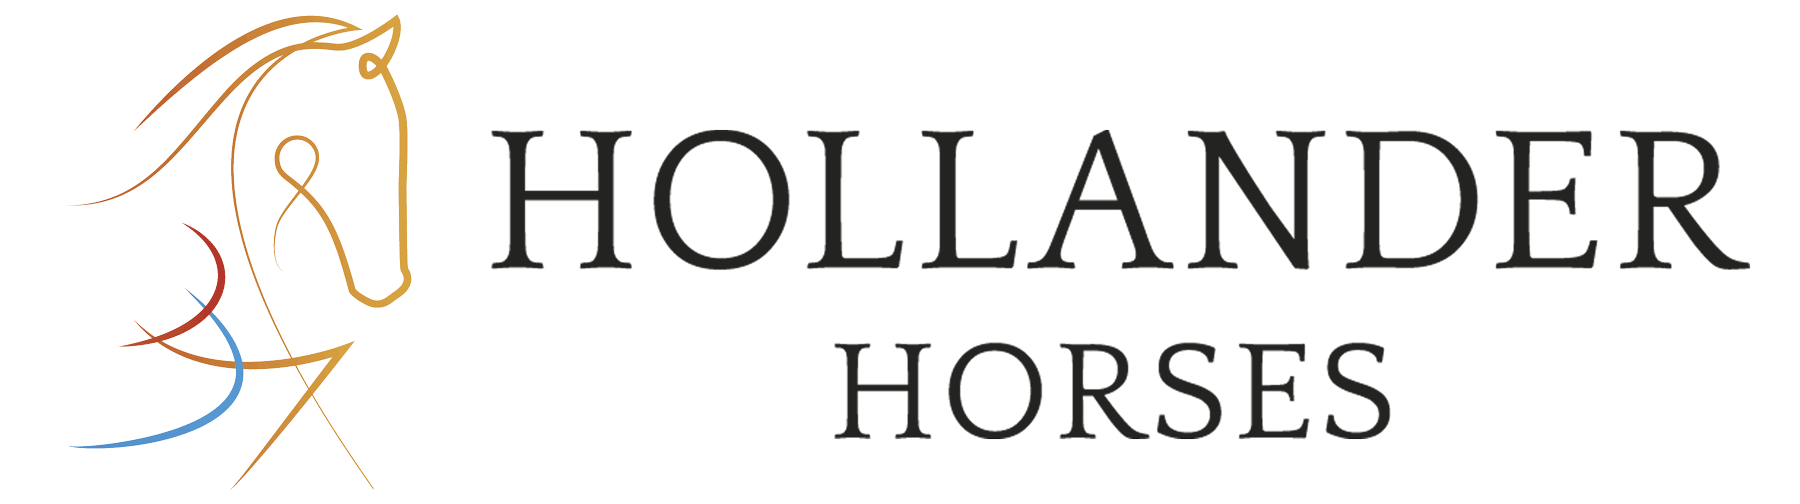 Hollander Horses